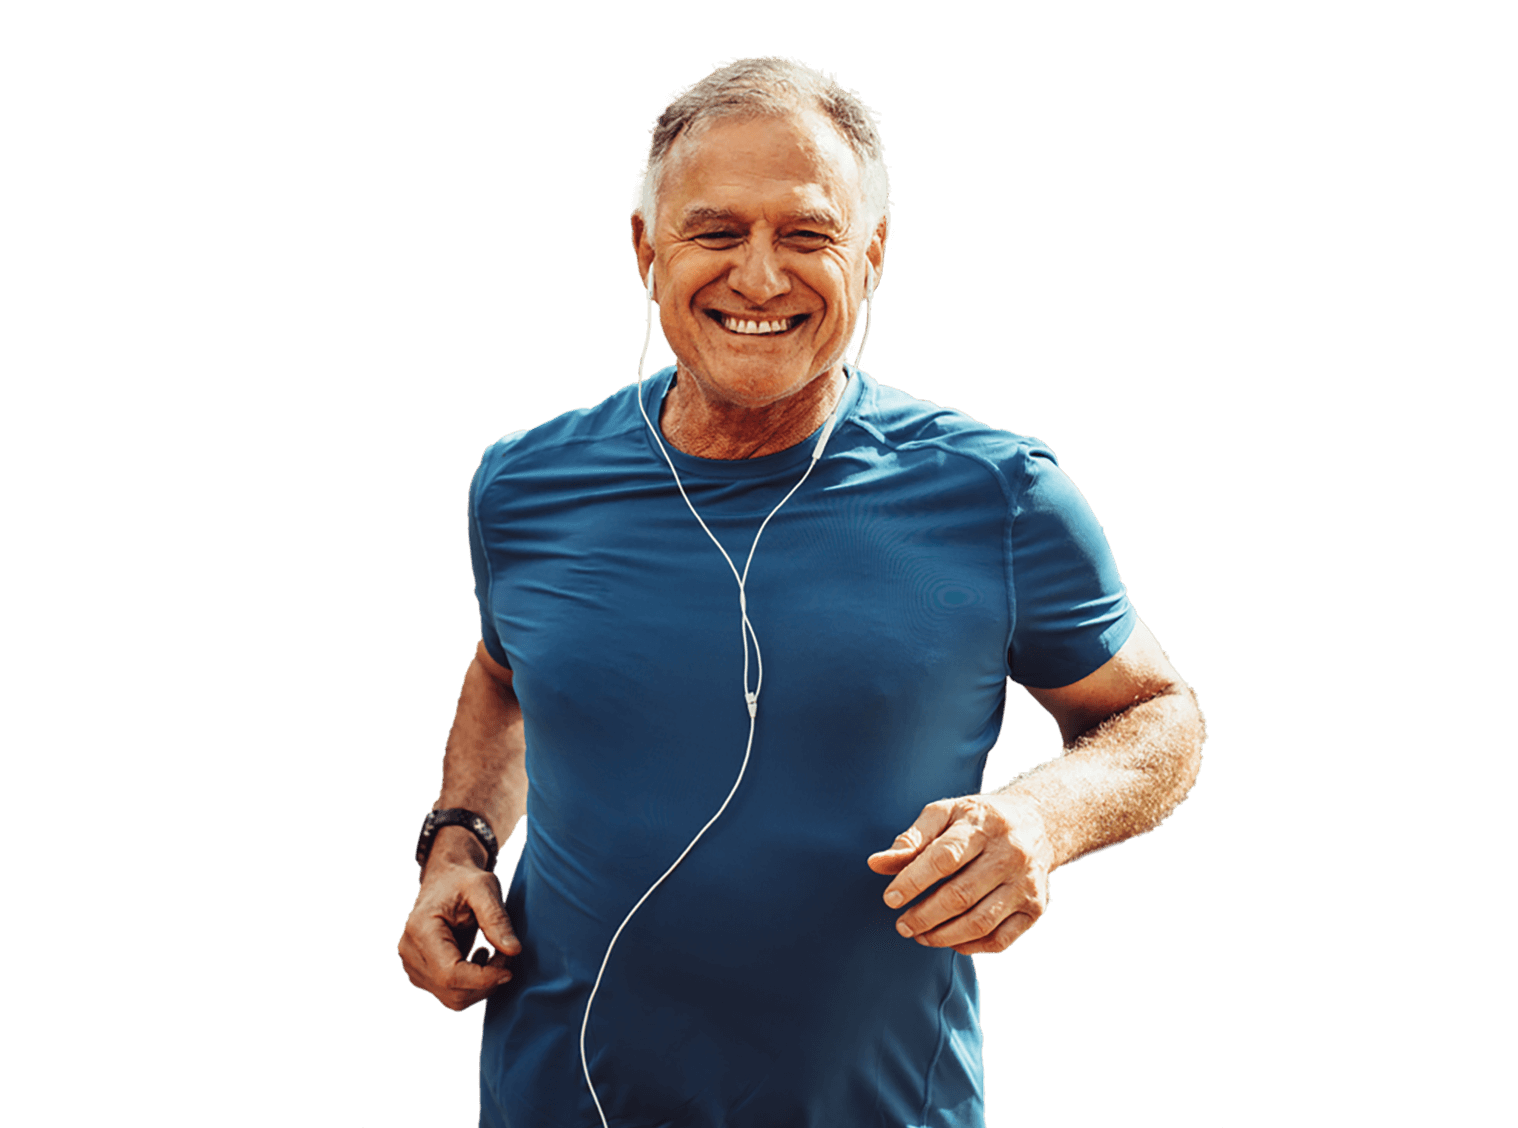 Man jogging with headphones